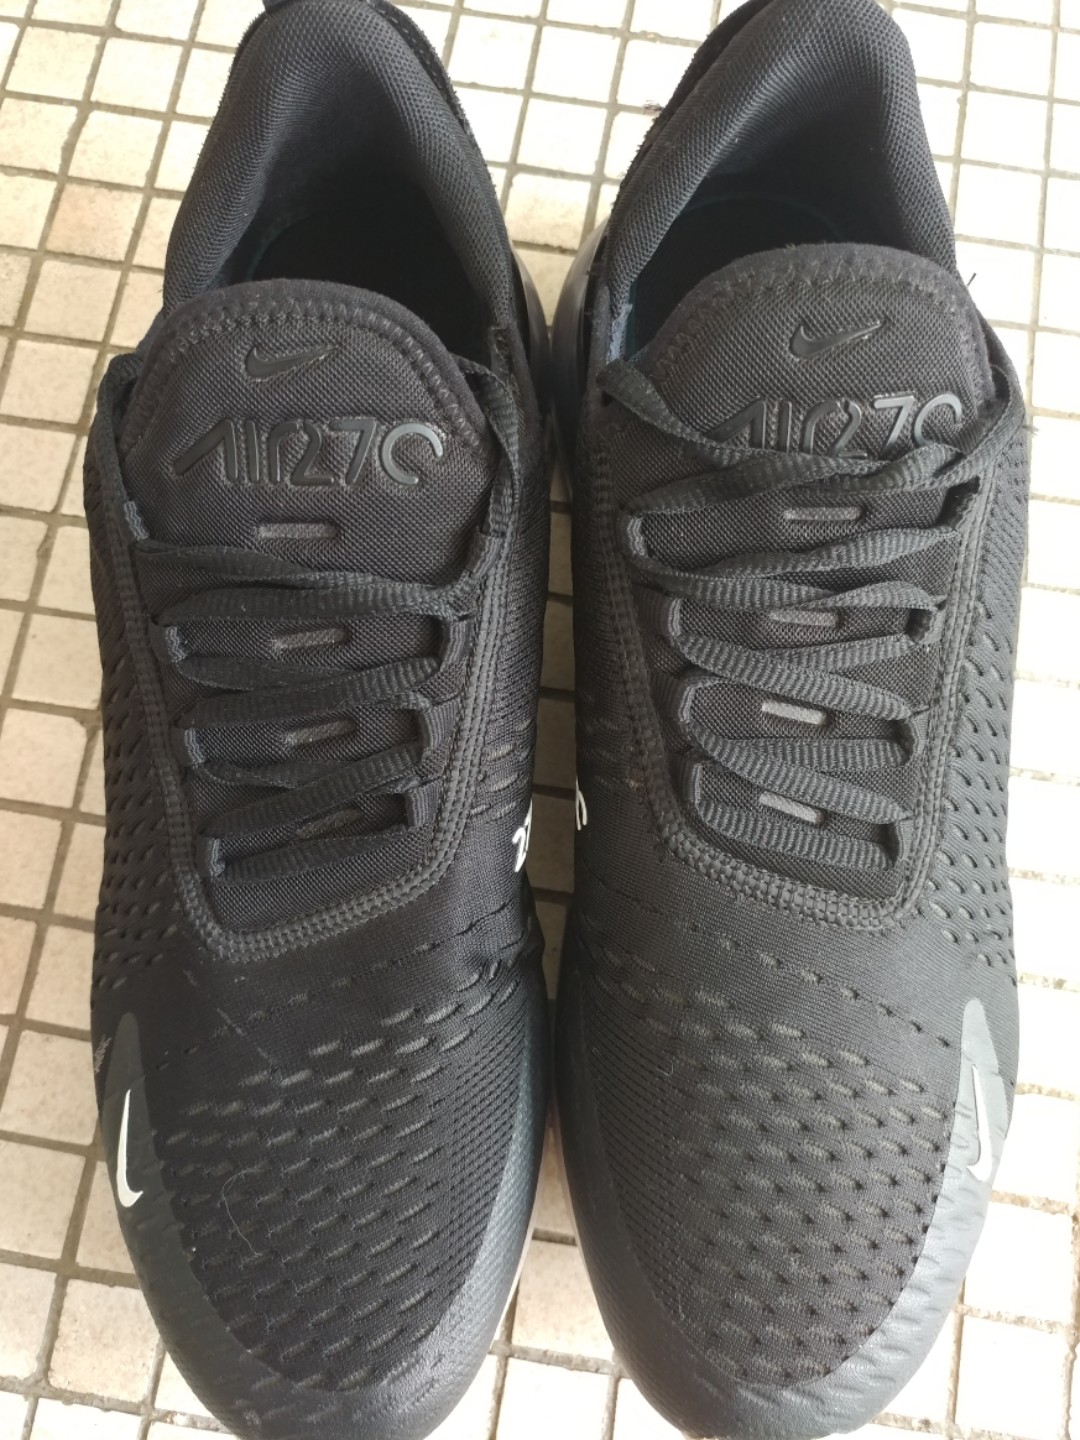 nike air 7c shoes